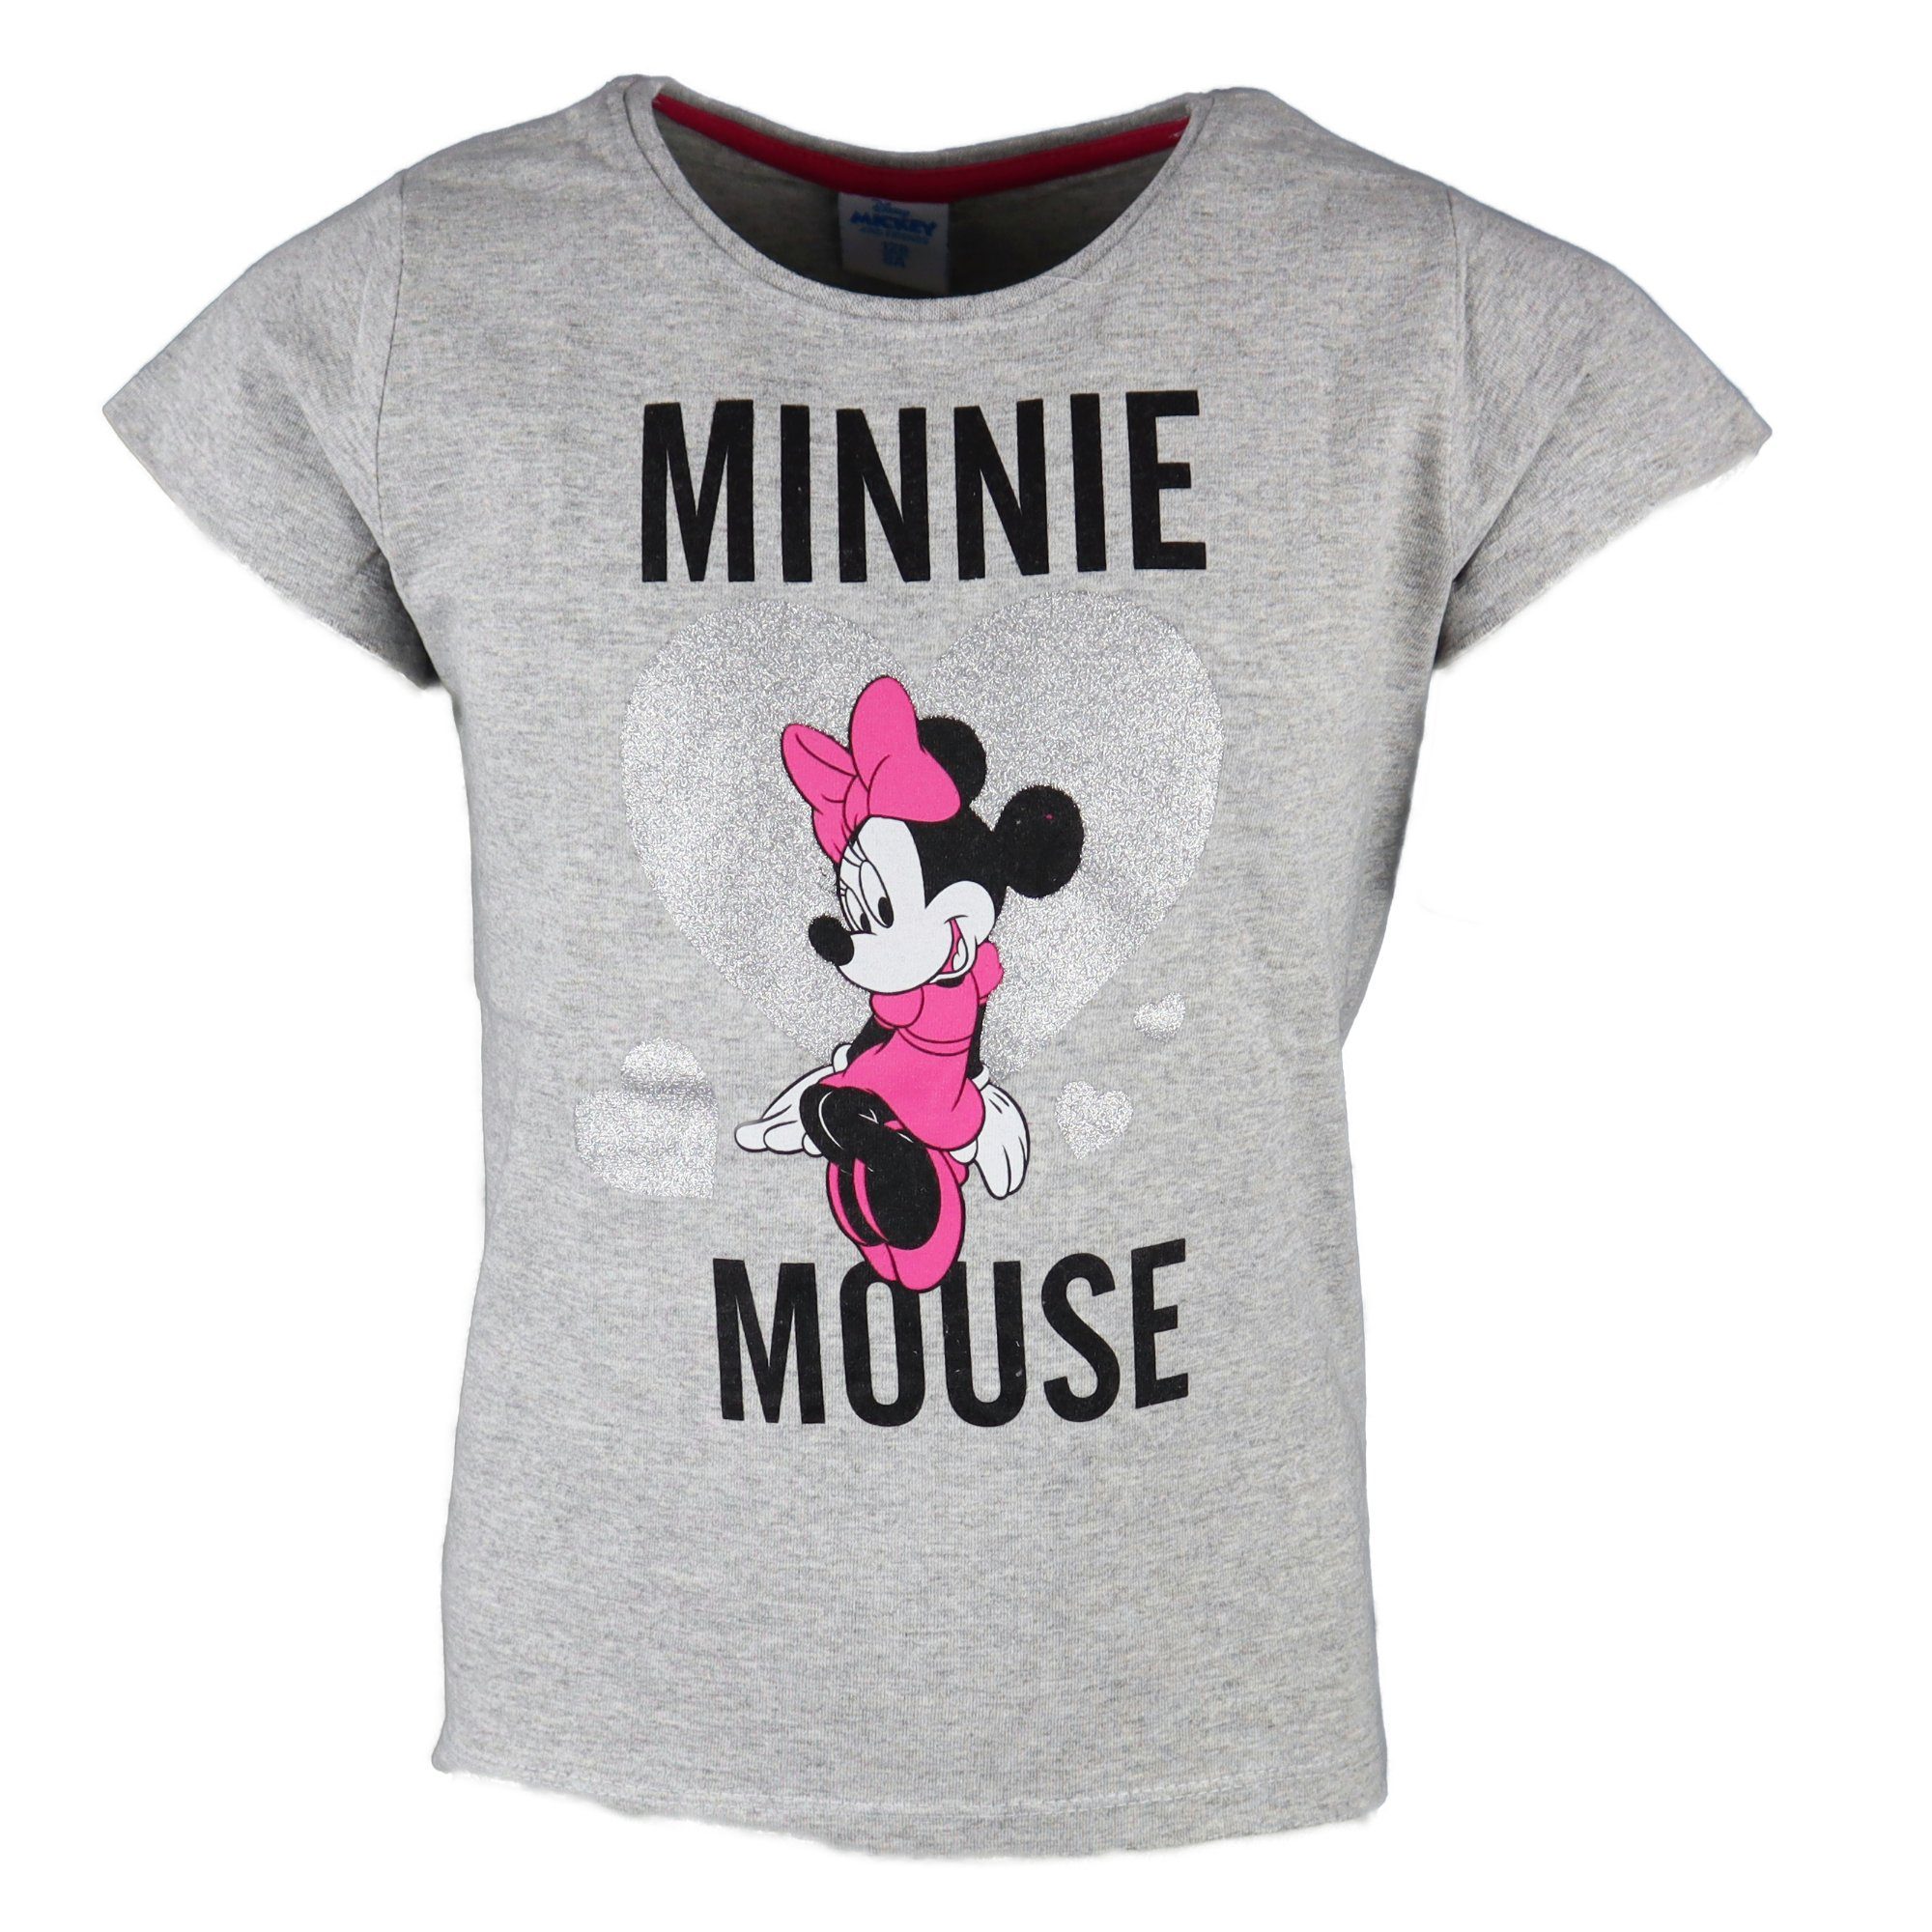 Disney Minnie Mouse T-Shirt Minnie Maus Love Kinder Mädchen Shirt Gr. 104 bis 134, Schwarz oder Grau